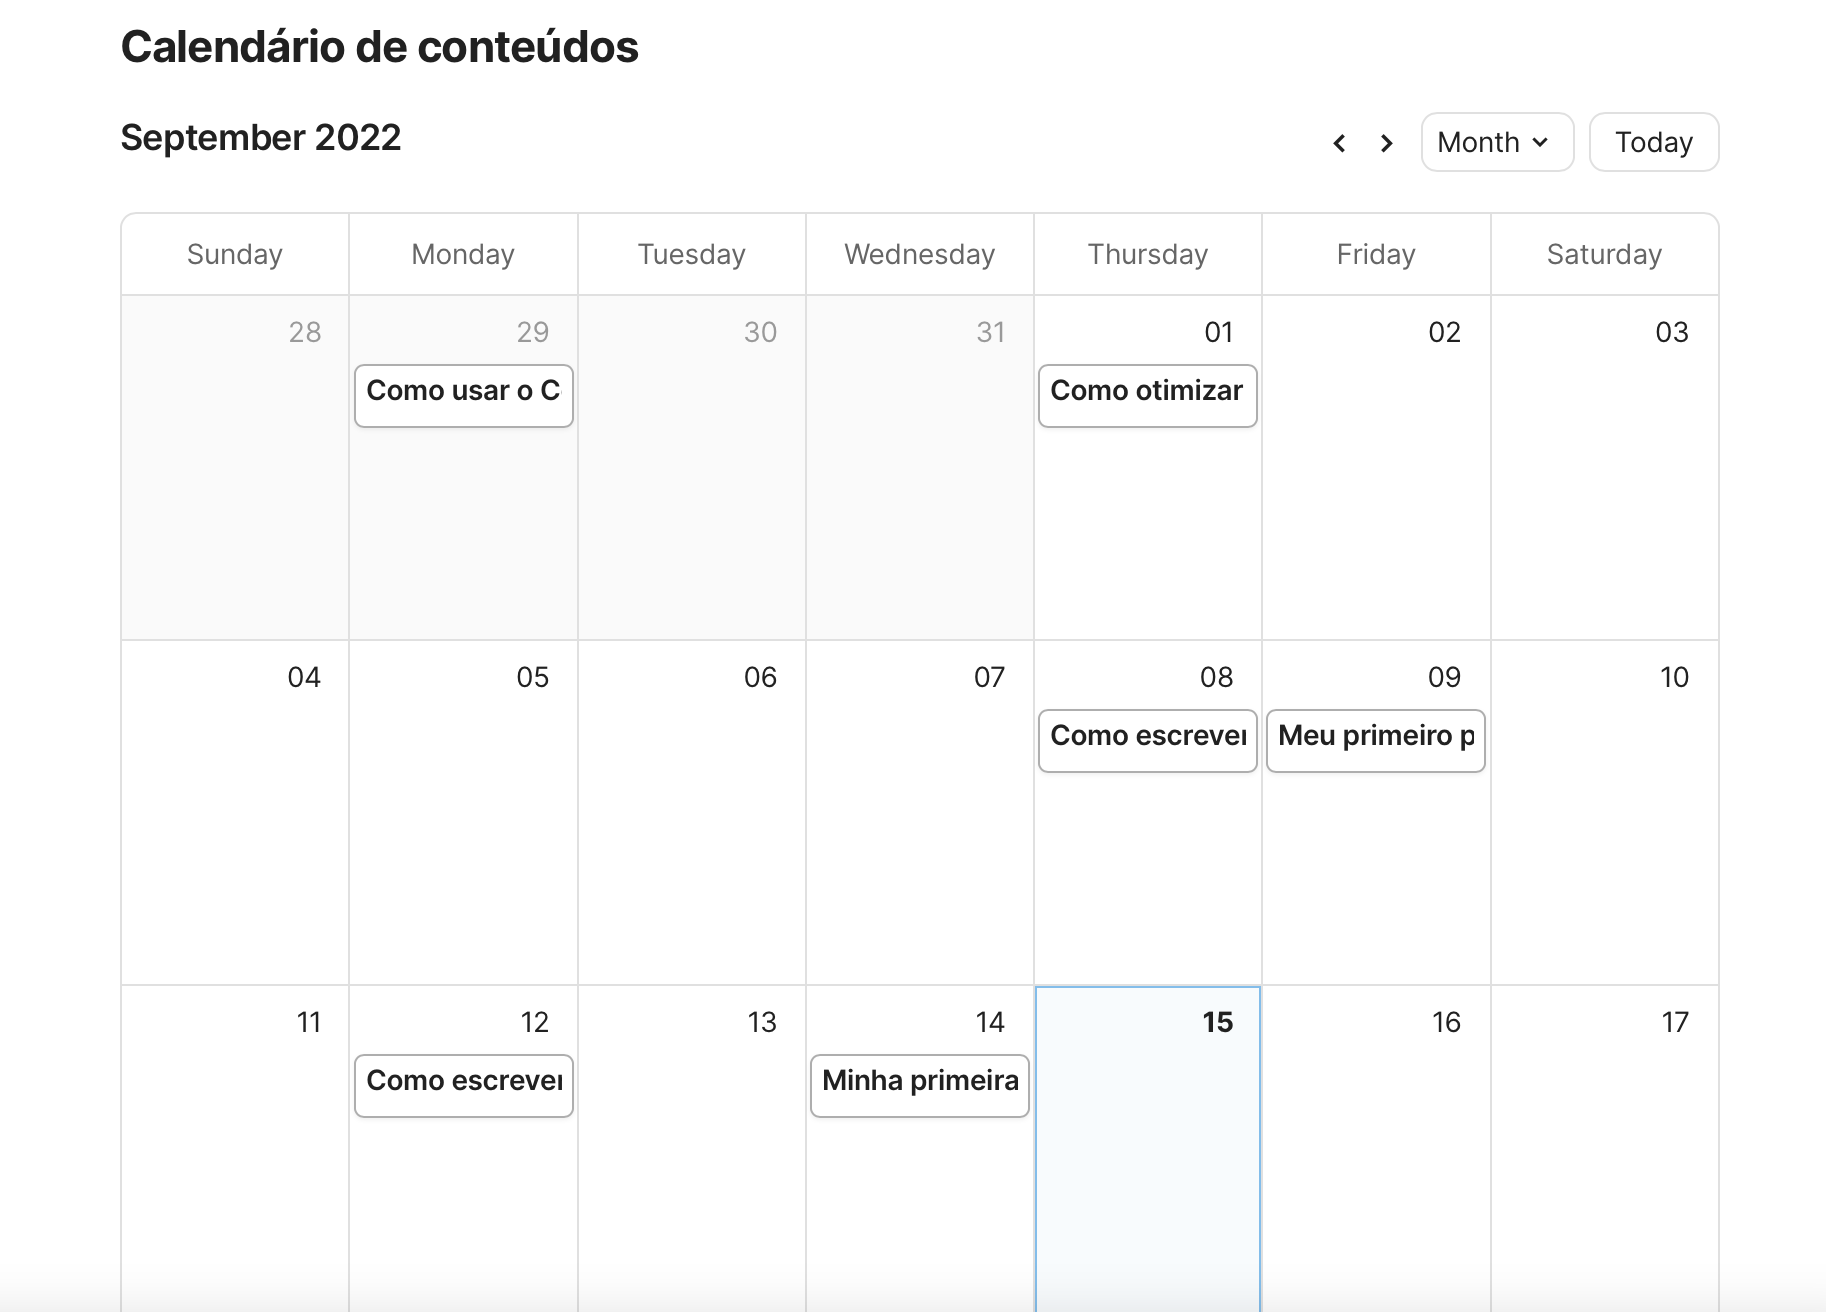 Página "Planejamento" com o calendário editorial sendo exibido